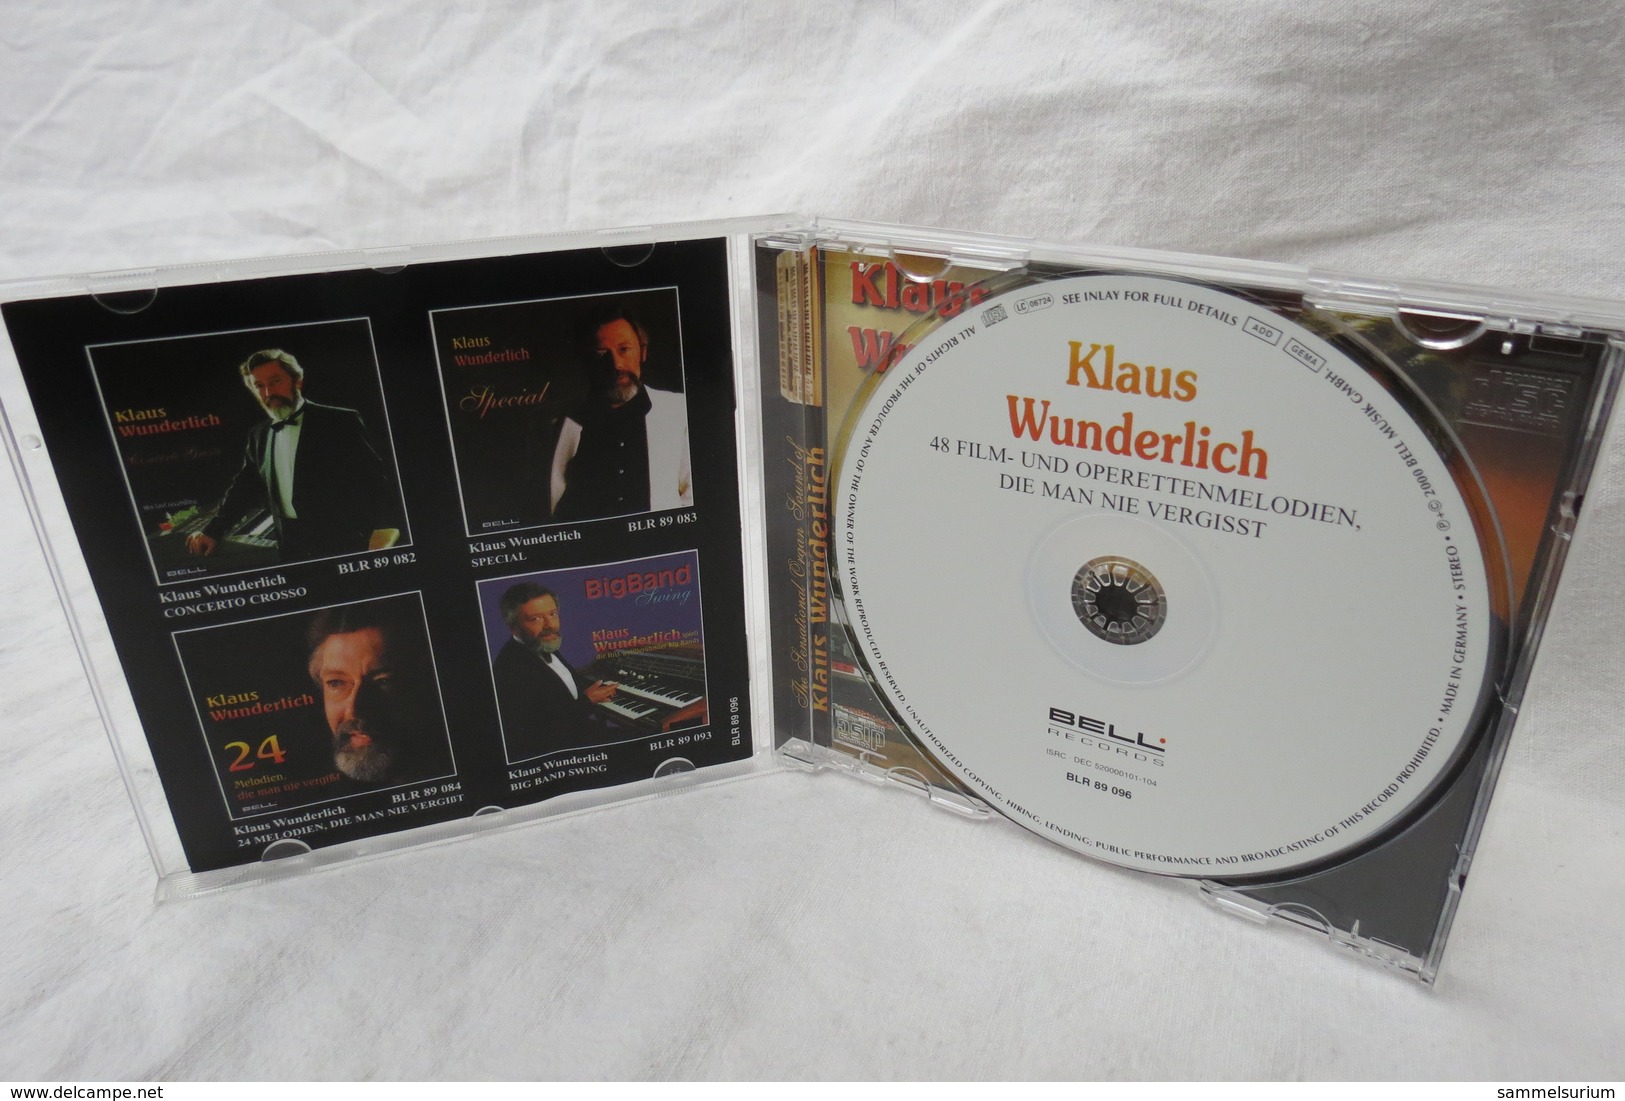 CD "Klaus Wunderlich" 48 Film- Und Operetten-Melodien Die Man Nie Vergisst - Opera